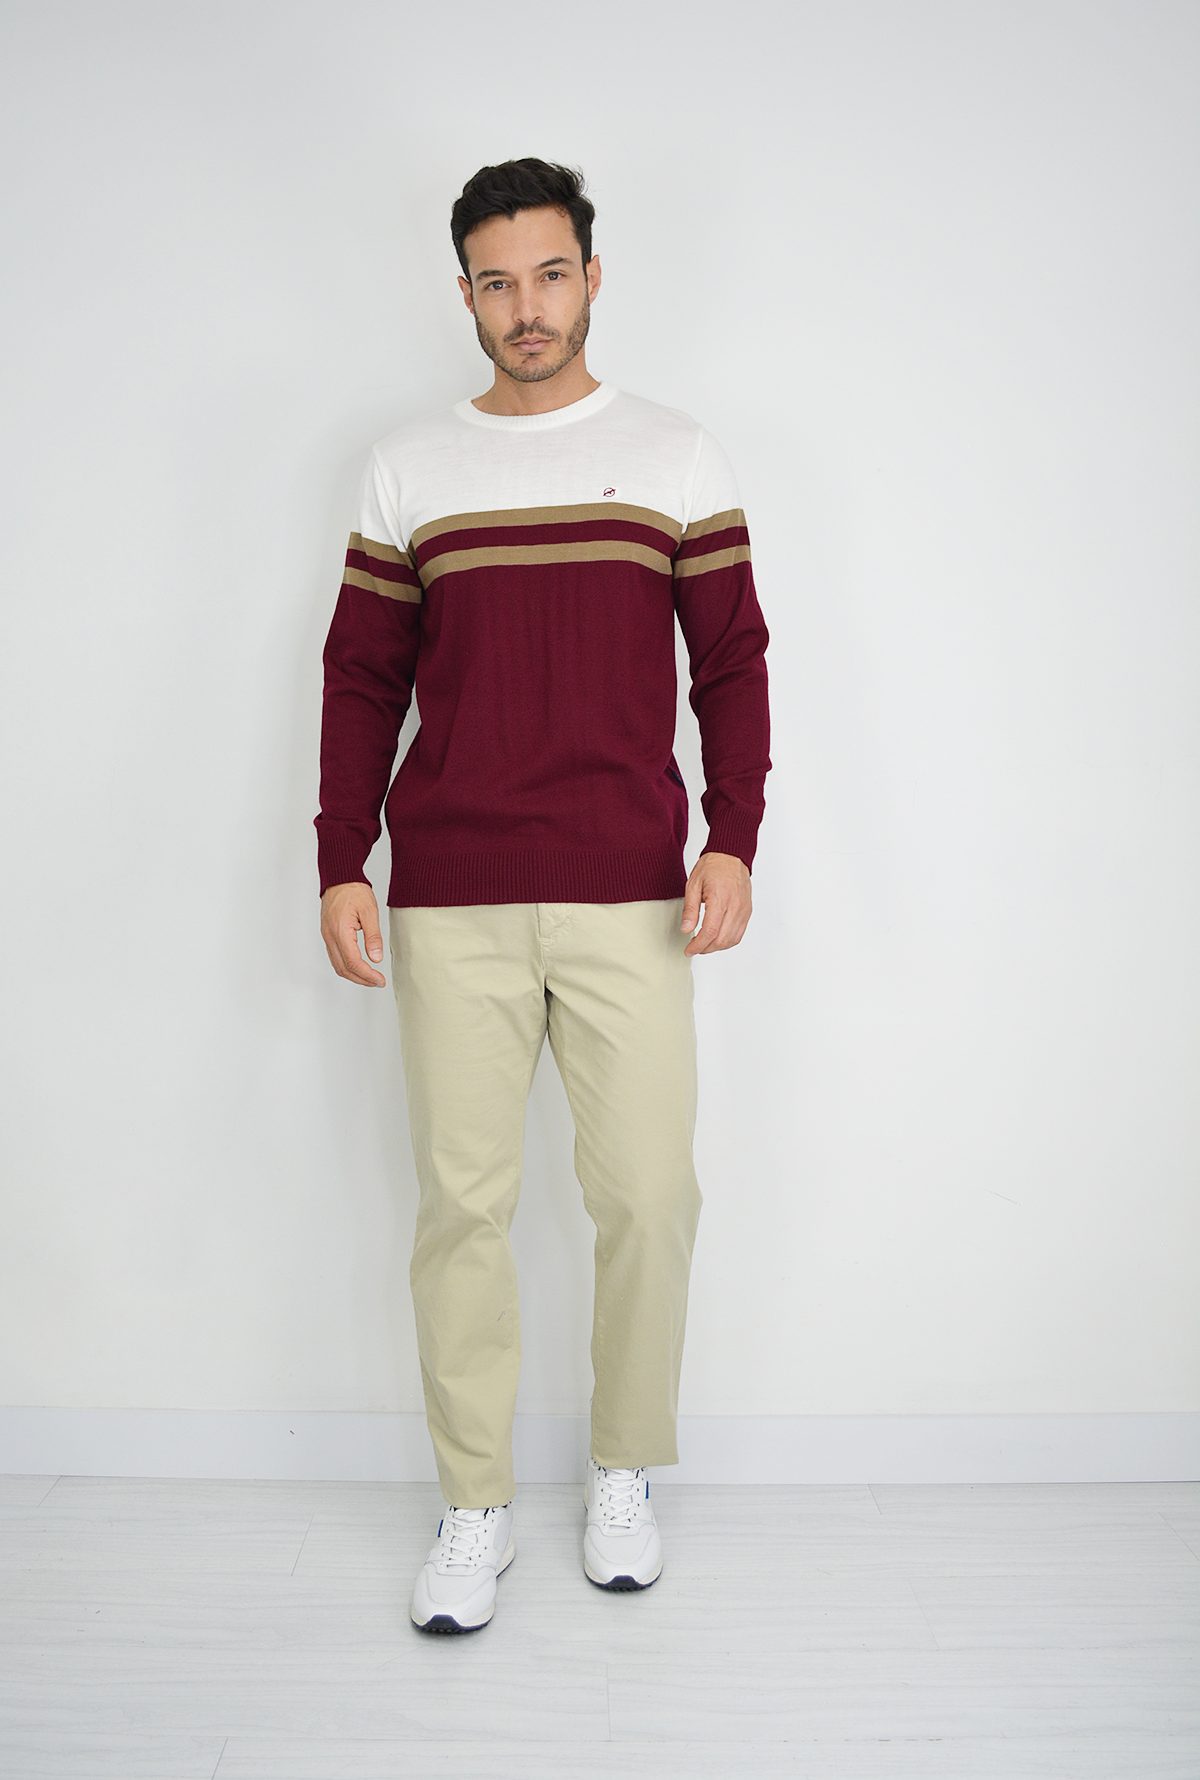 Sweater Tejido Vinotinto  para Hombre SW050-12